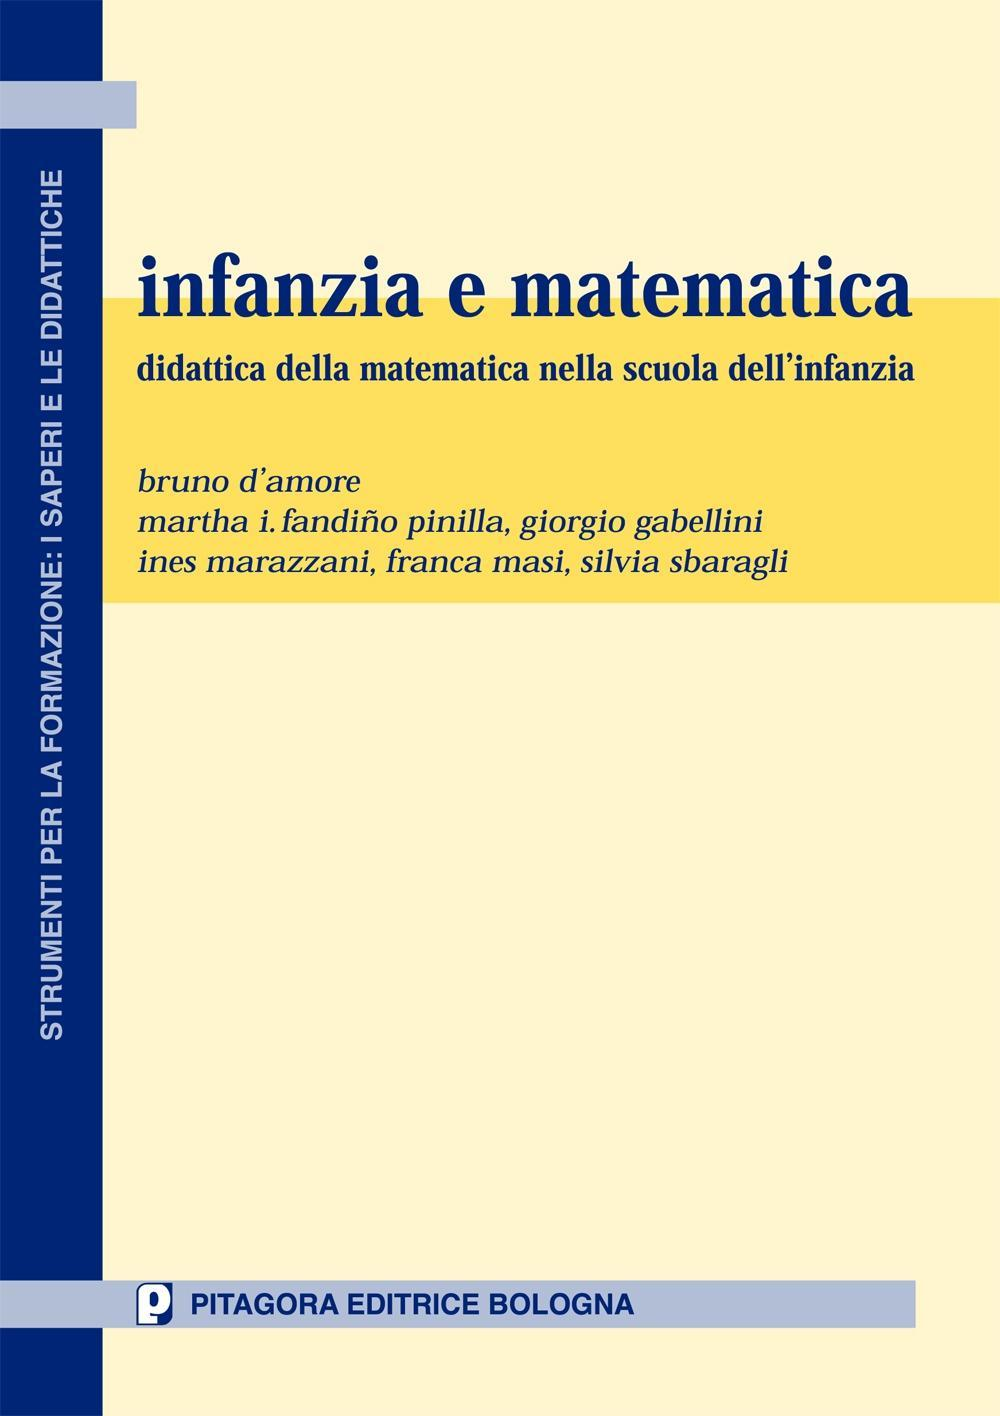 Image of Infanzia e matematica. Didattica della matematica nella scuola dell'infanzia